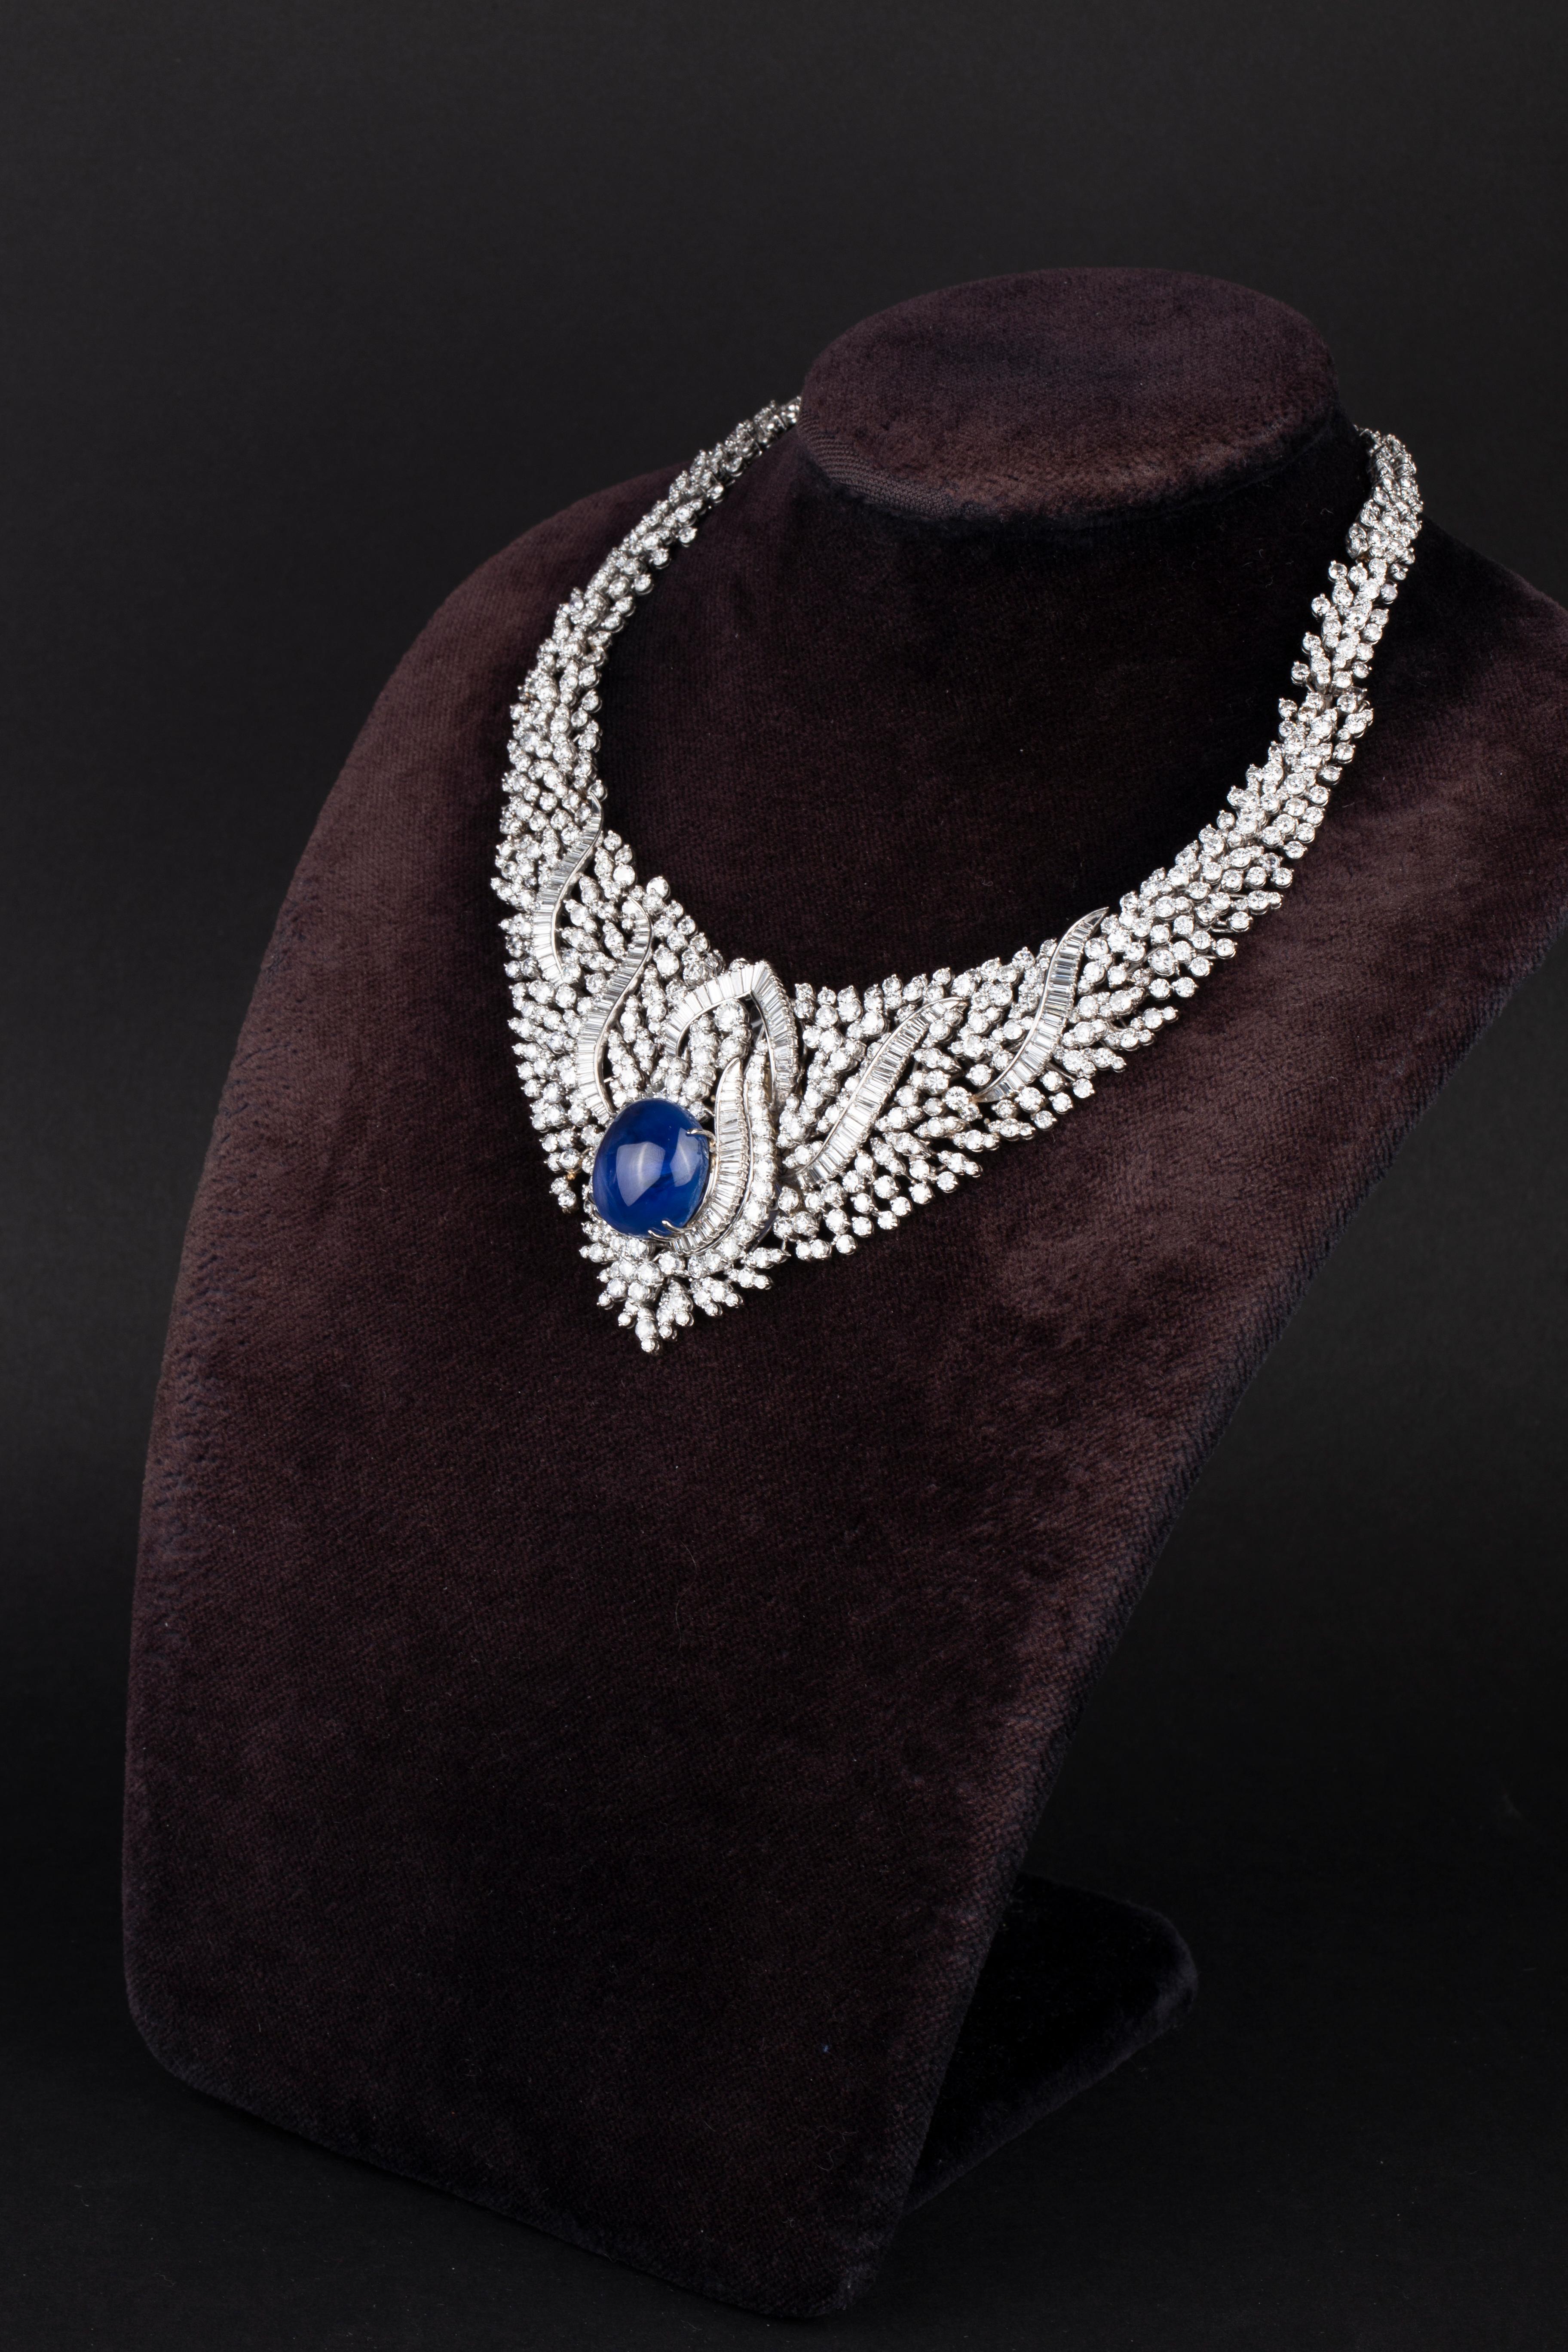 cabochon sapphire necklace